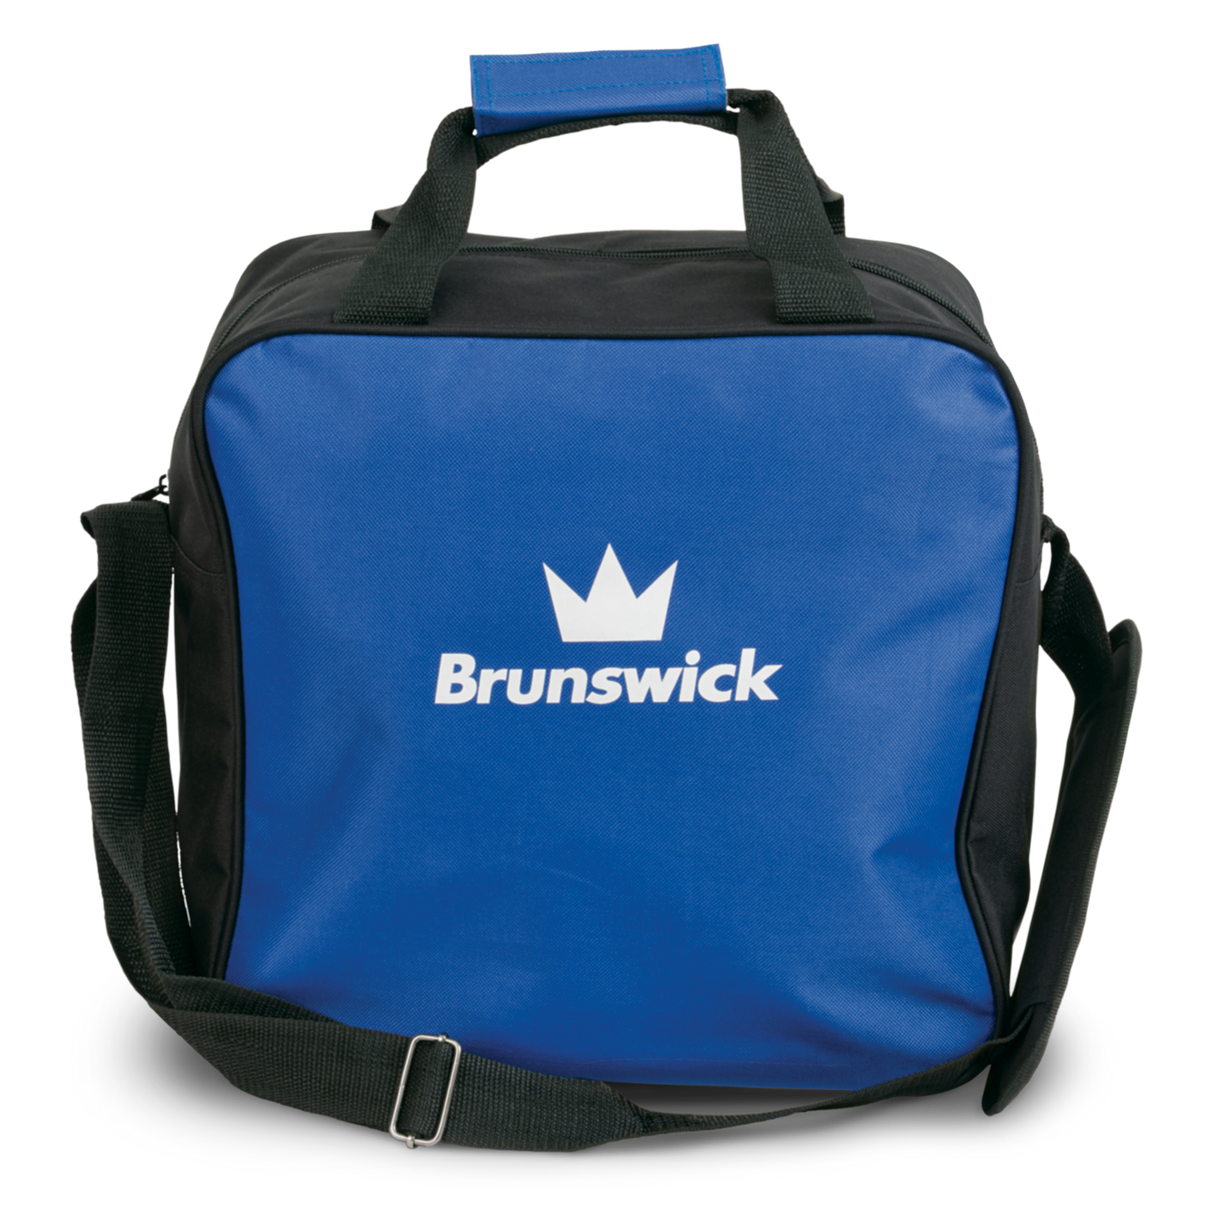 Brunswick Target Zone Single Blue Bowling Bag Bowling Bag travel suitcase league tournament play sale discount coupon online pba tour